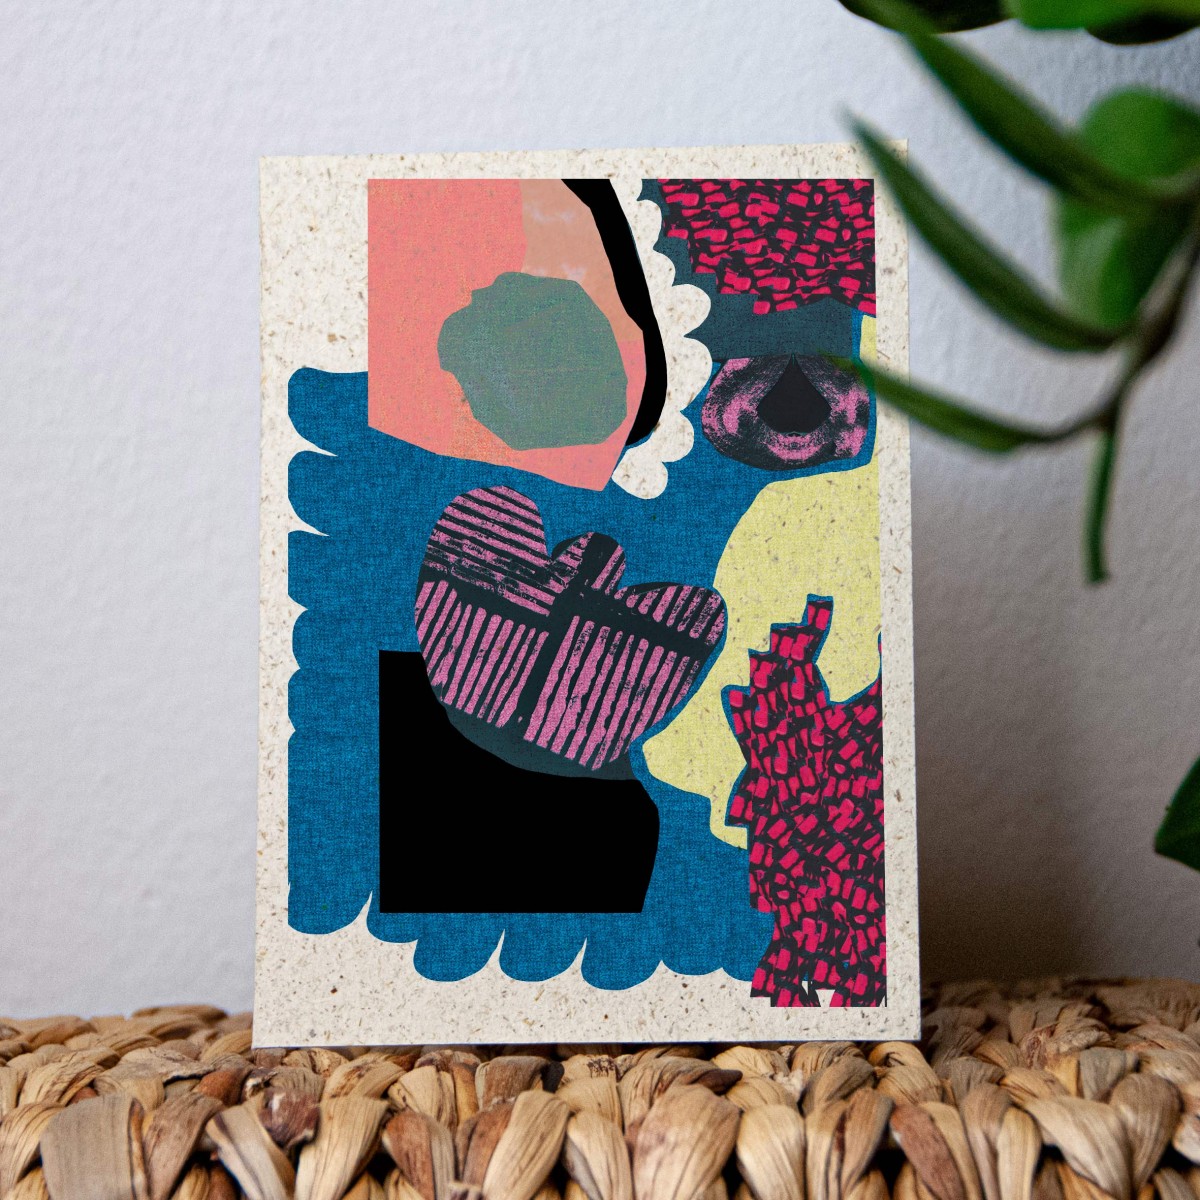 Kartenset formwiese »abstrakt« mit Kuverts (4 Grußkarten, Graspapier, vegane bio Farben)